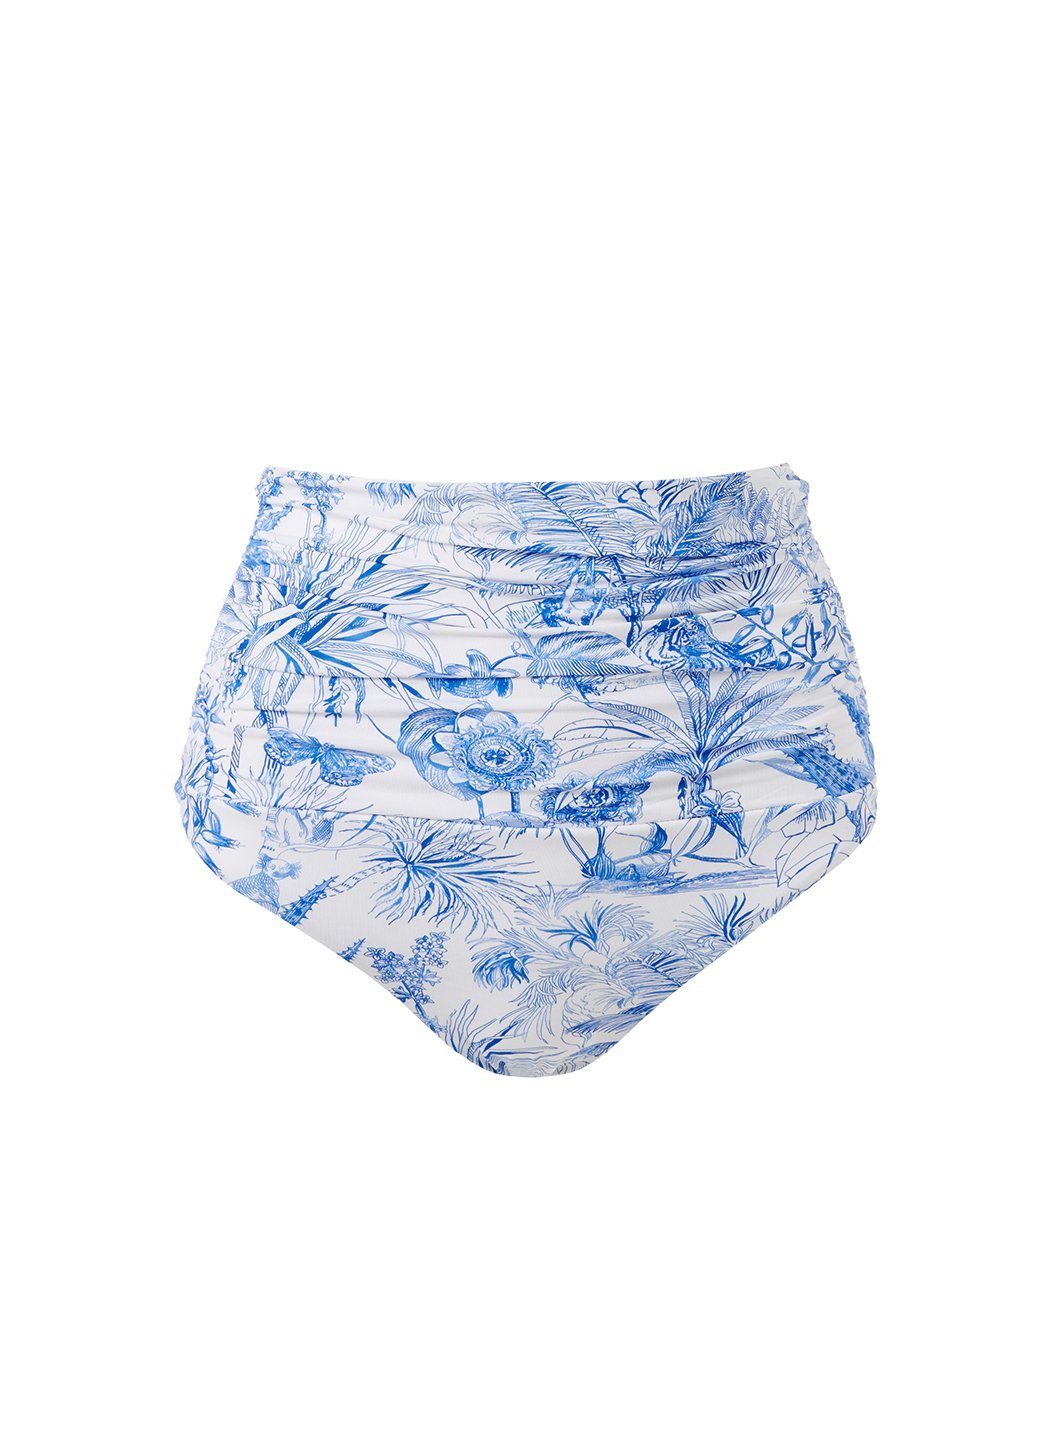 Melissa Odabash Ancona Blue Tropical High Waisted Bandeau Bikini Bottom ...